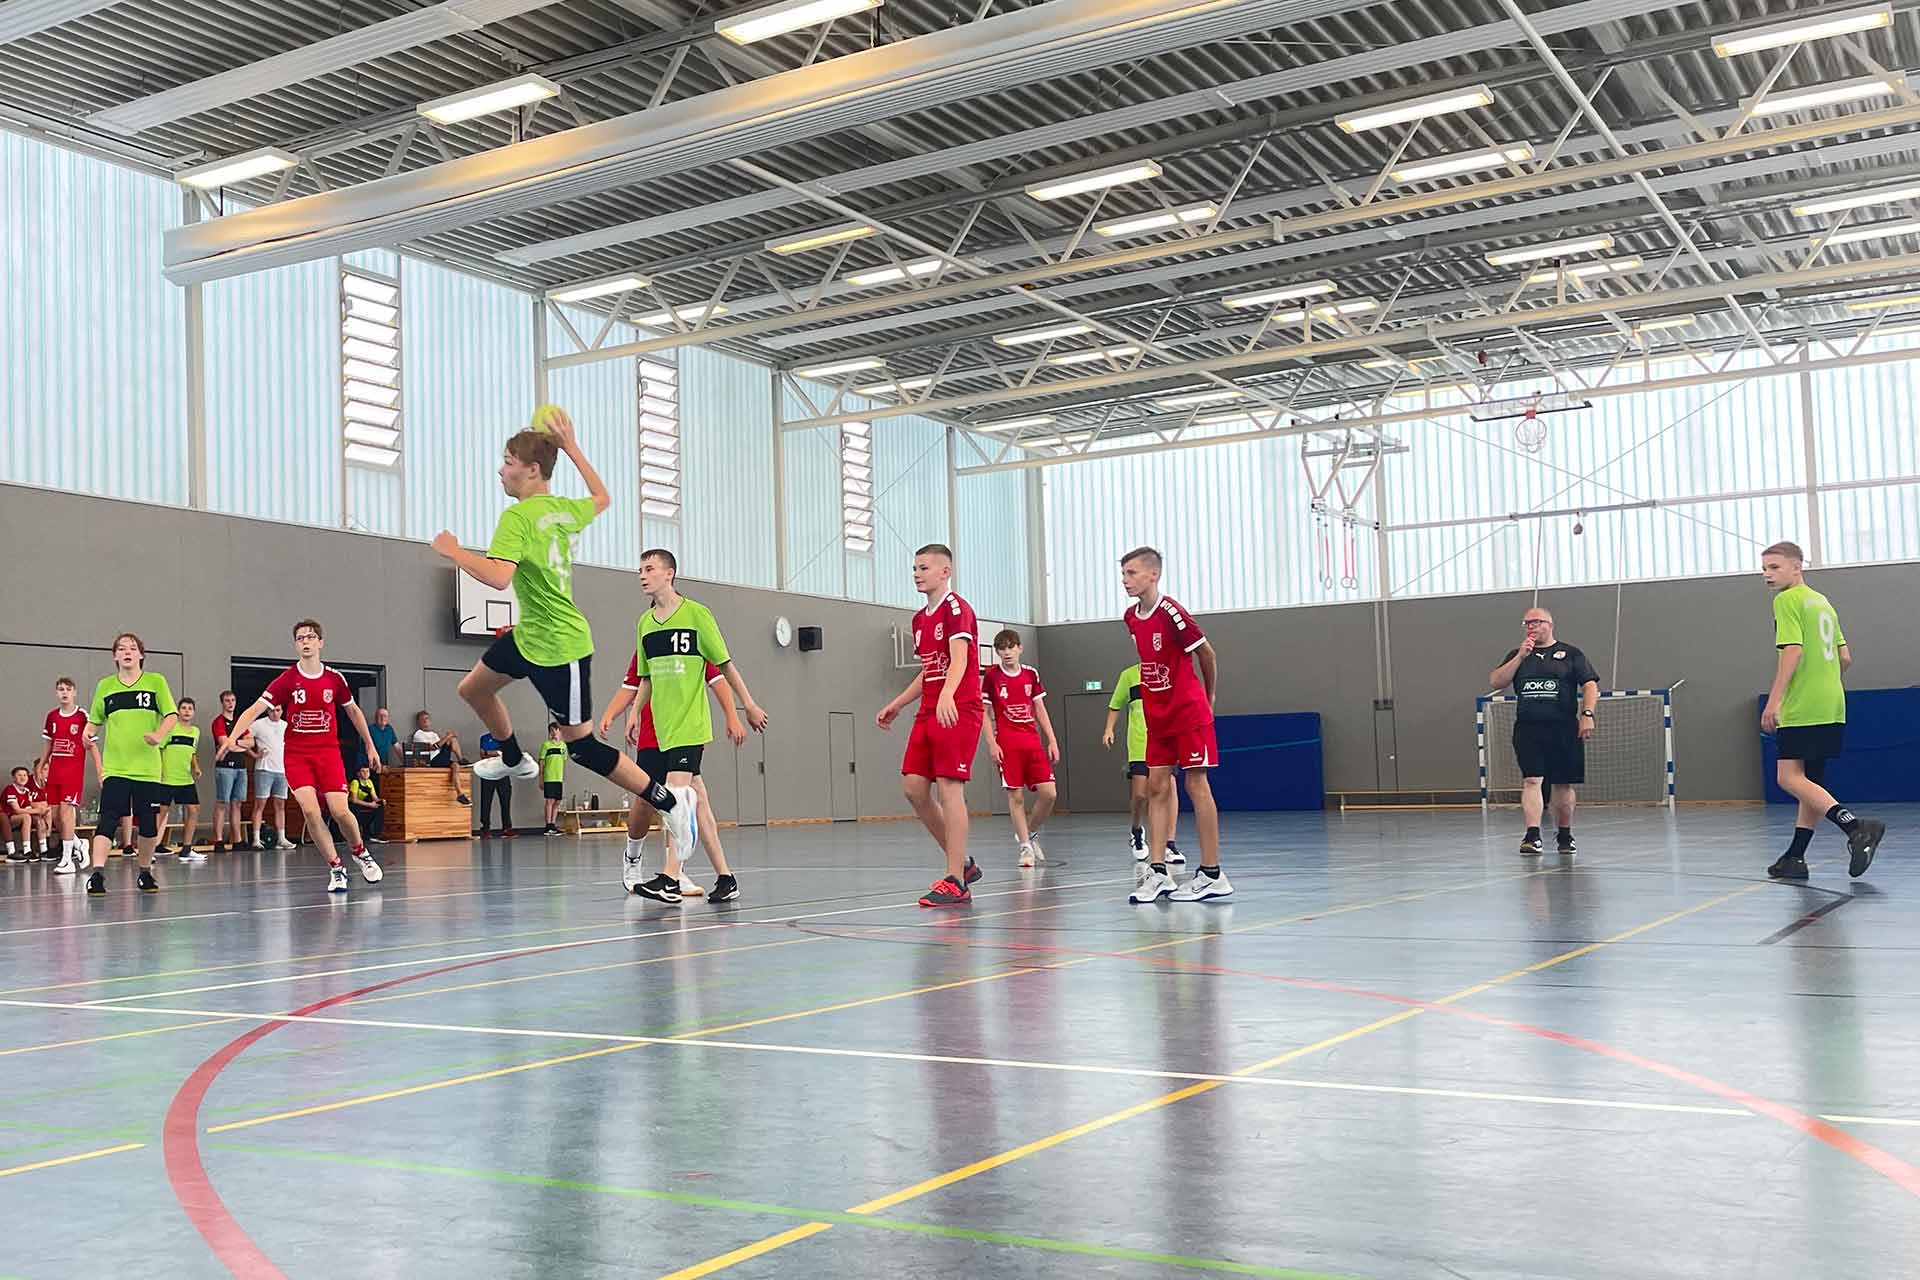 Freundschaftspiel der C-Jugend Handball Westfalia Scherlebeck e.V. gegen Handball SV Westerholt e.V.